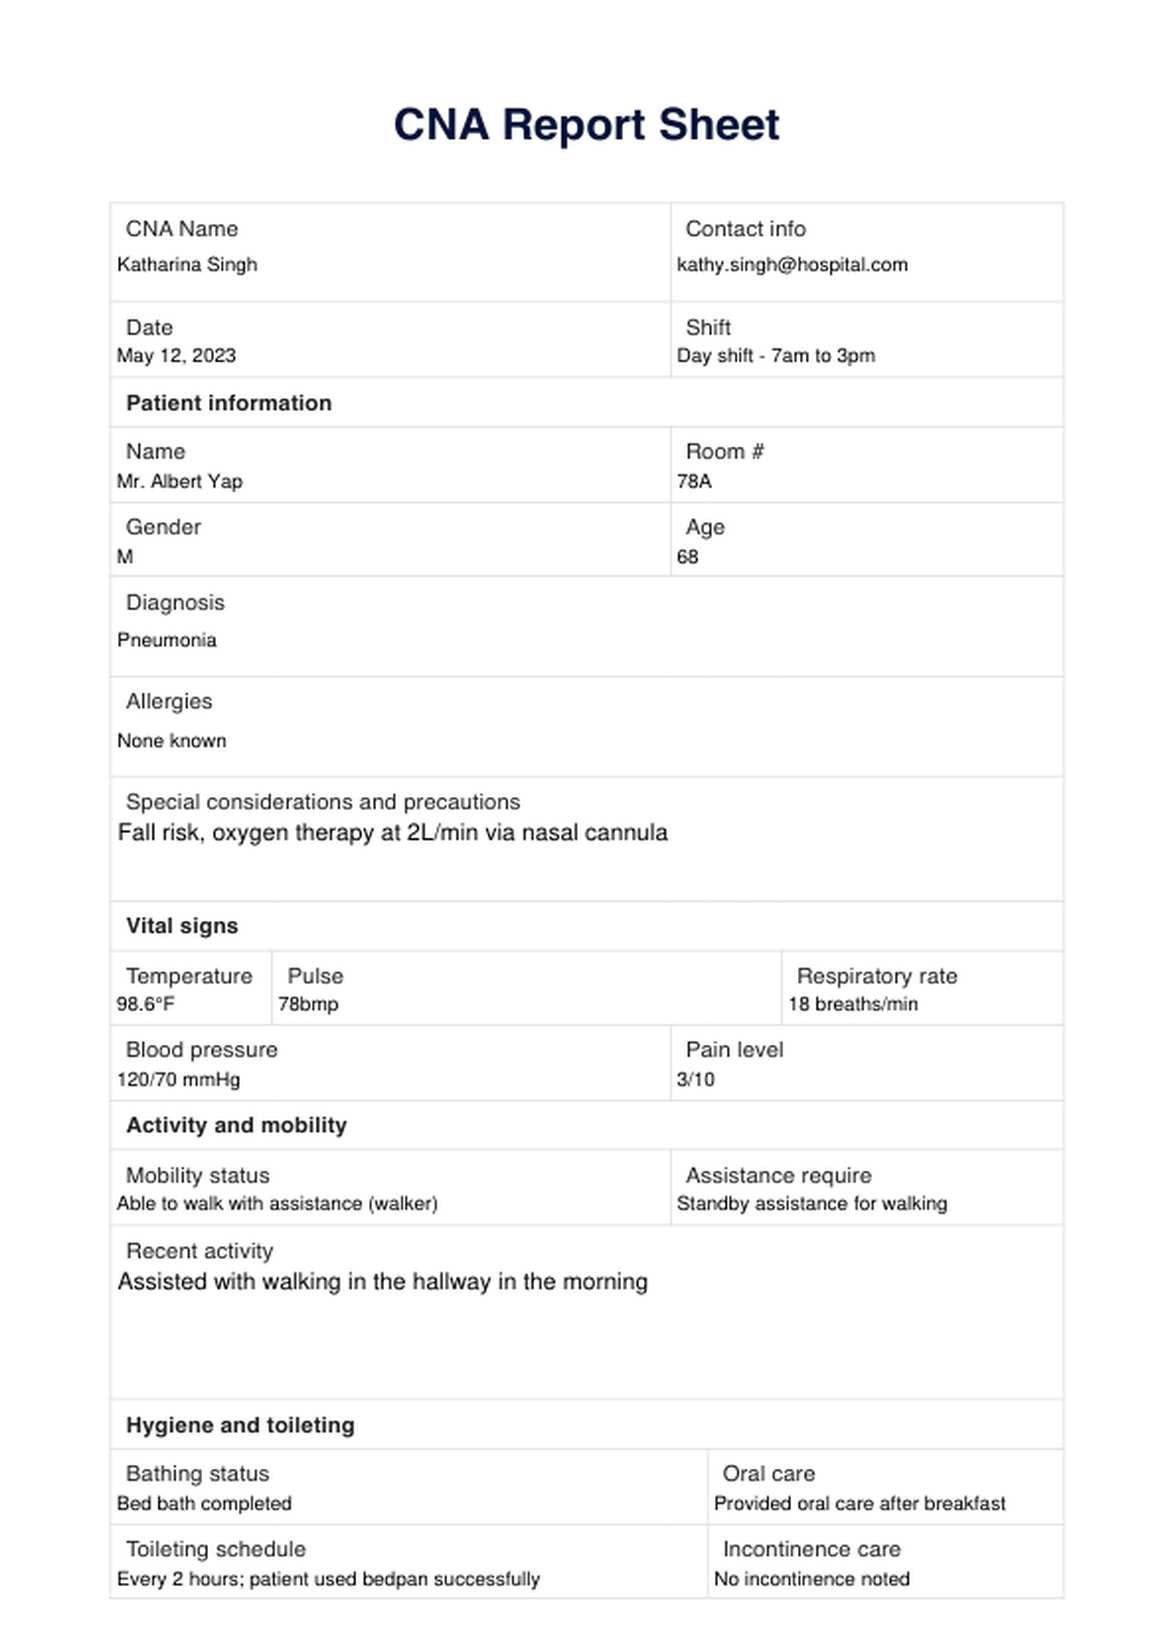 CNA Report Sheet PDF Example